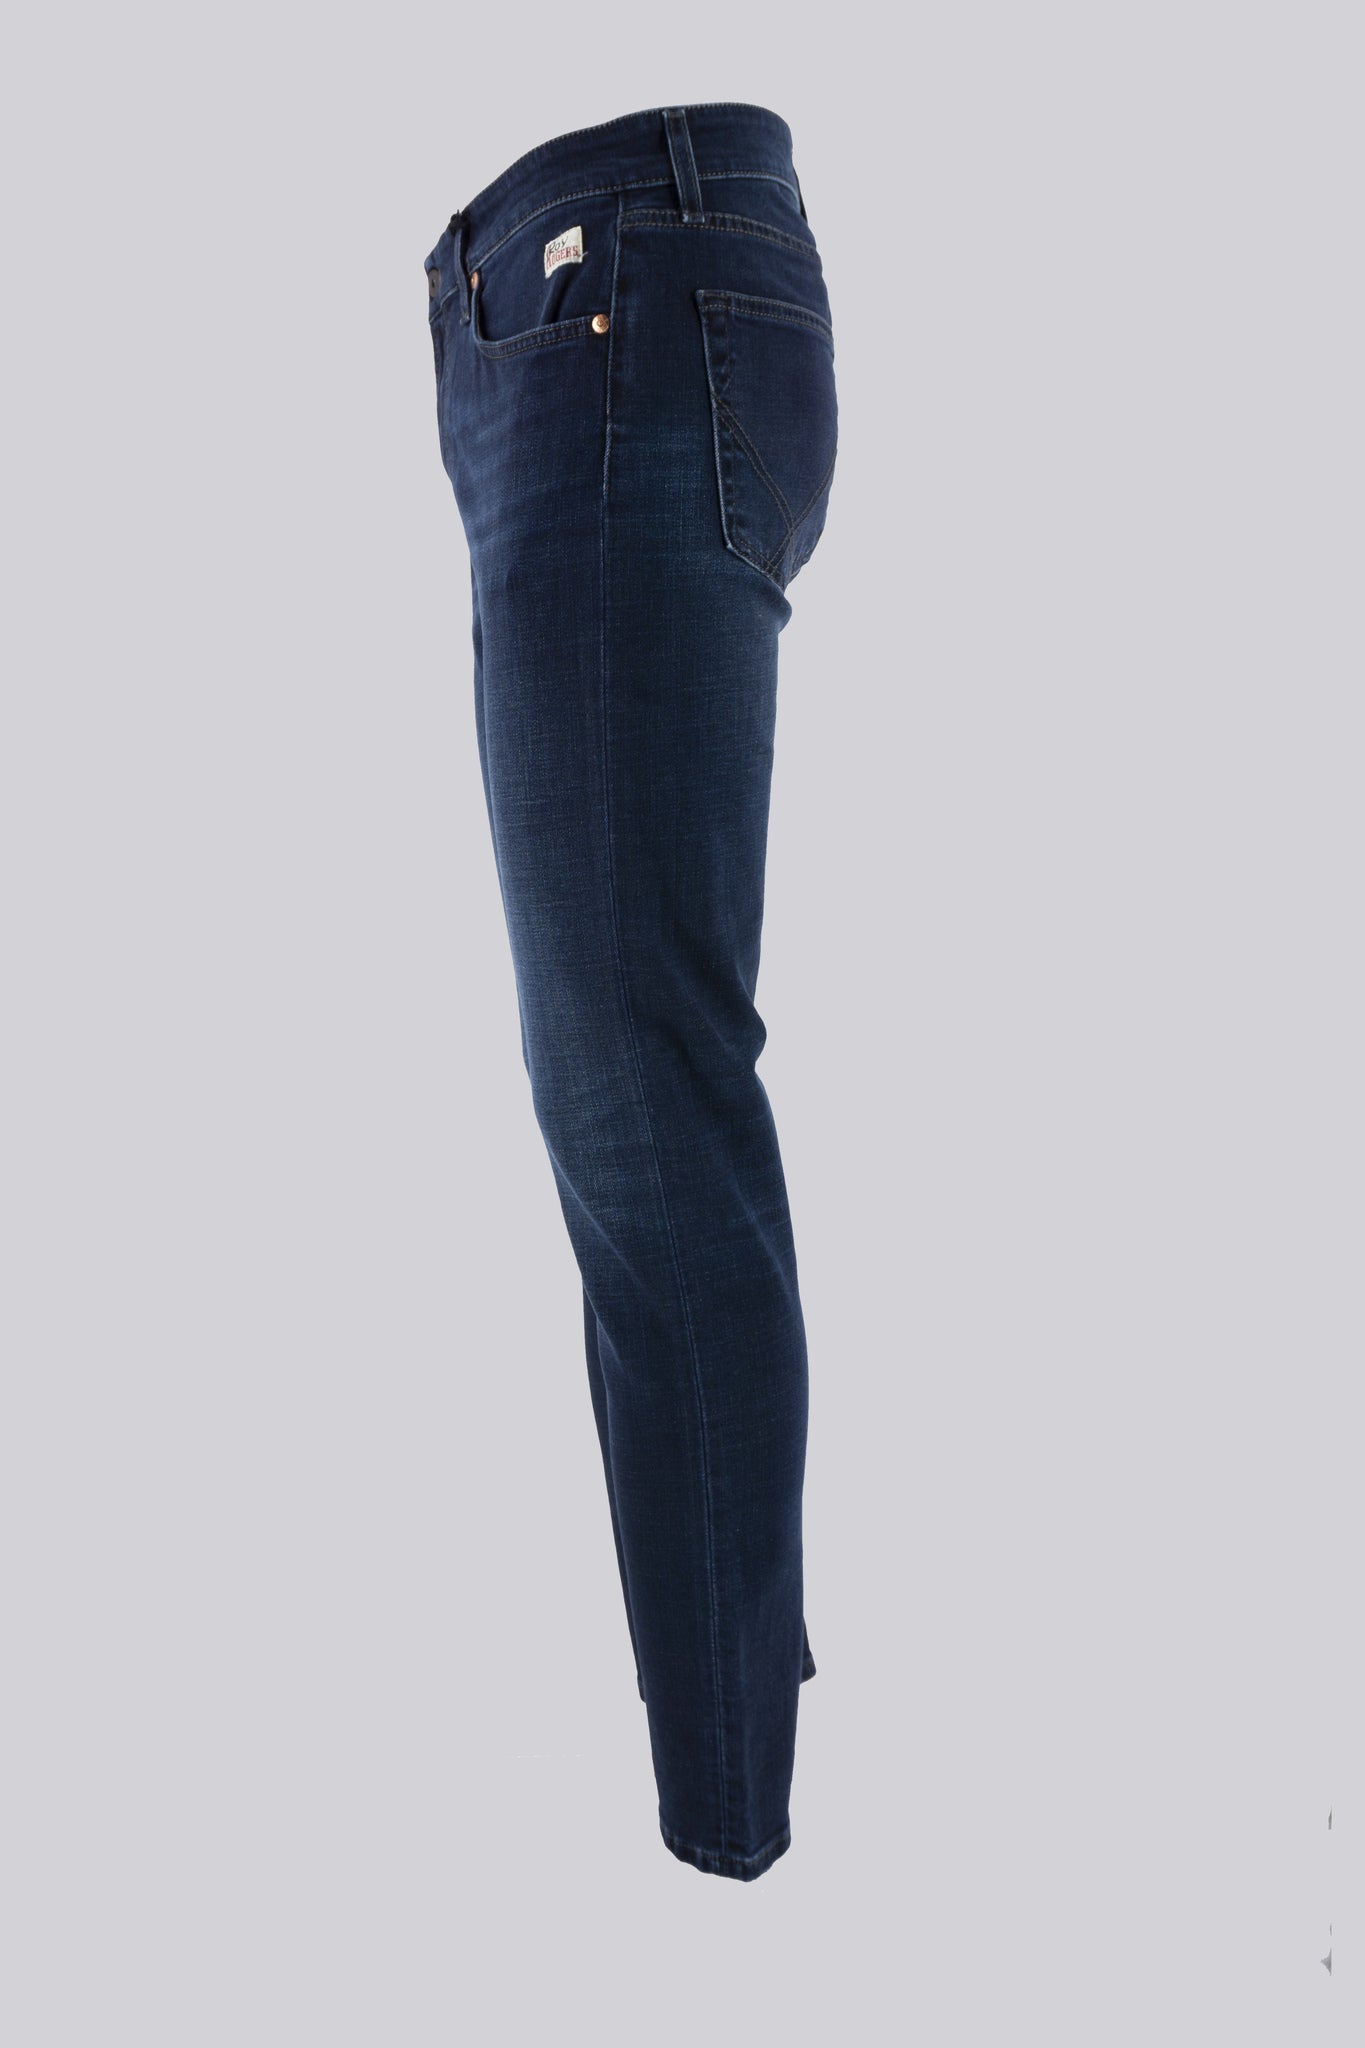 Jeans Lavaggio Scuro Dublin / Jeans - Ideal Moda